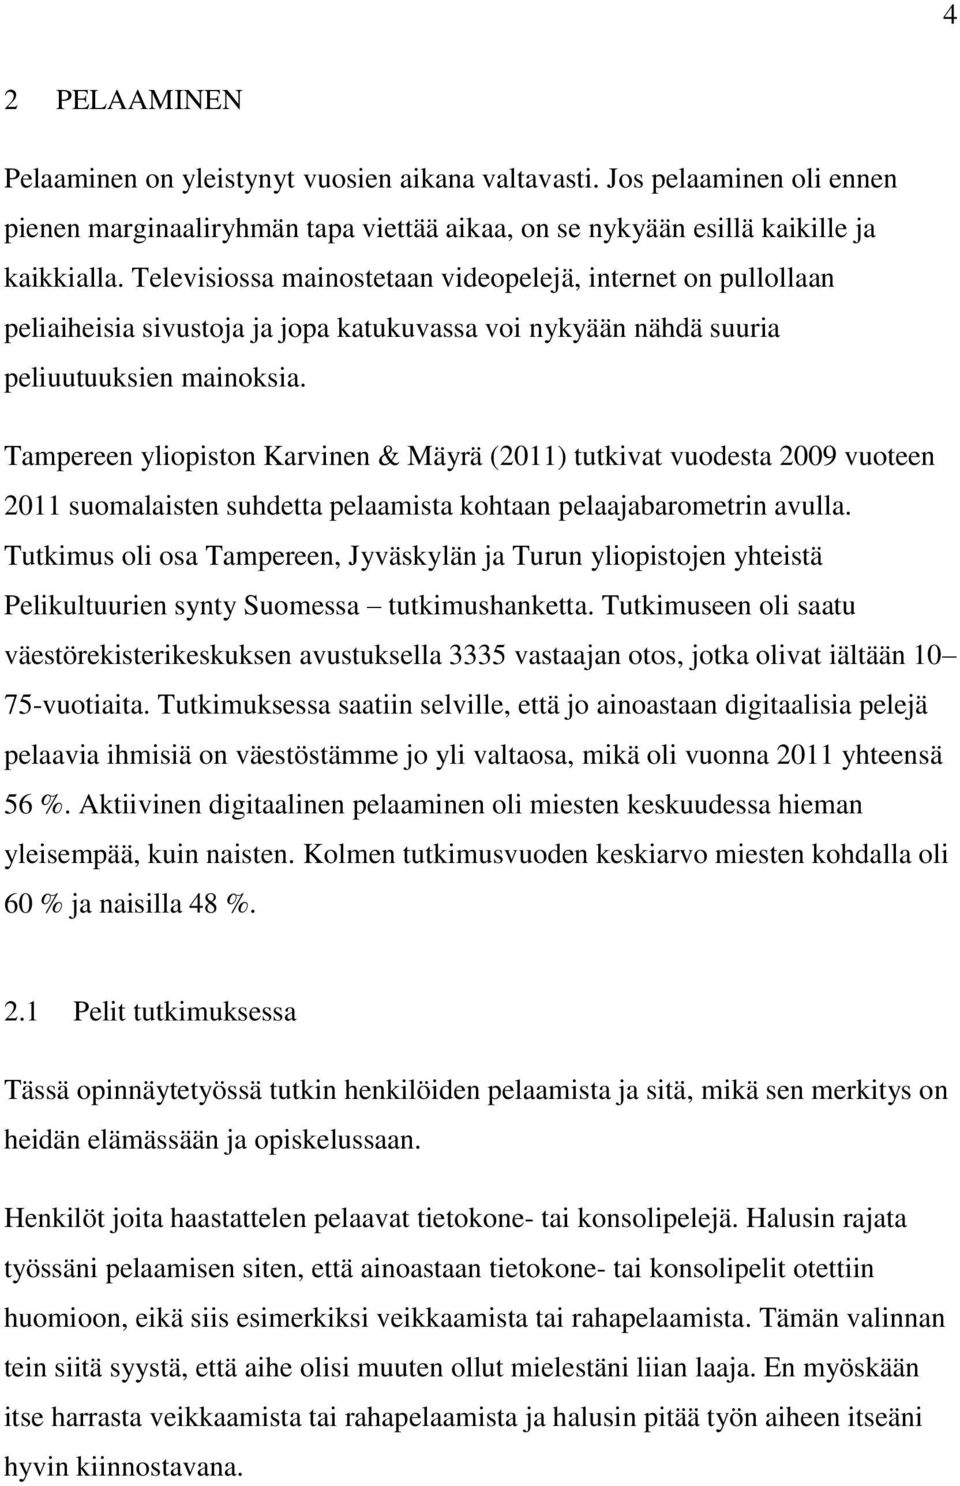 Tampereen yliopiston Karvinen & Mäyrä (2011) tutkivat vuodesta 2009 vuoteen 2011 suomalaisten suhdetta pelaamista kohtaan pelaajabarometrin avulla.